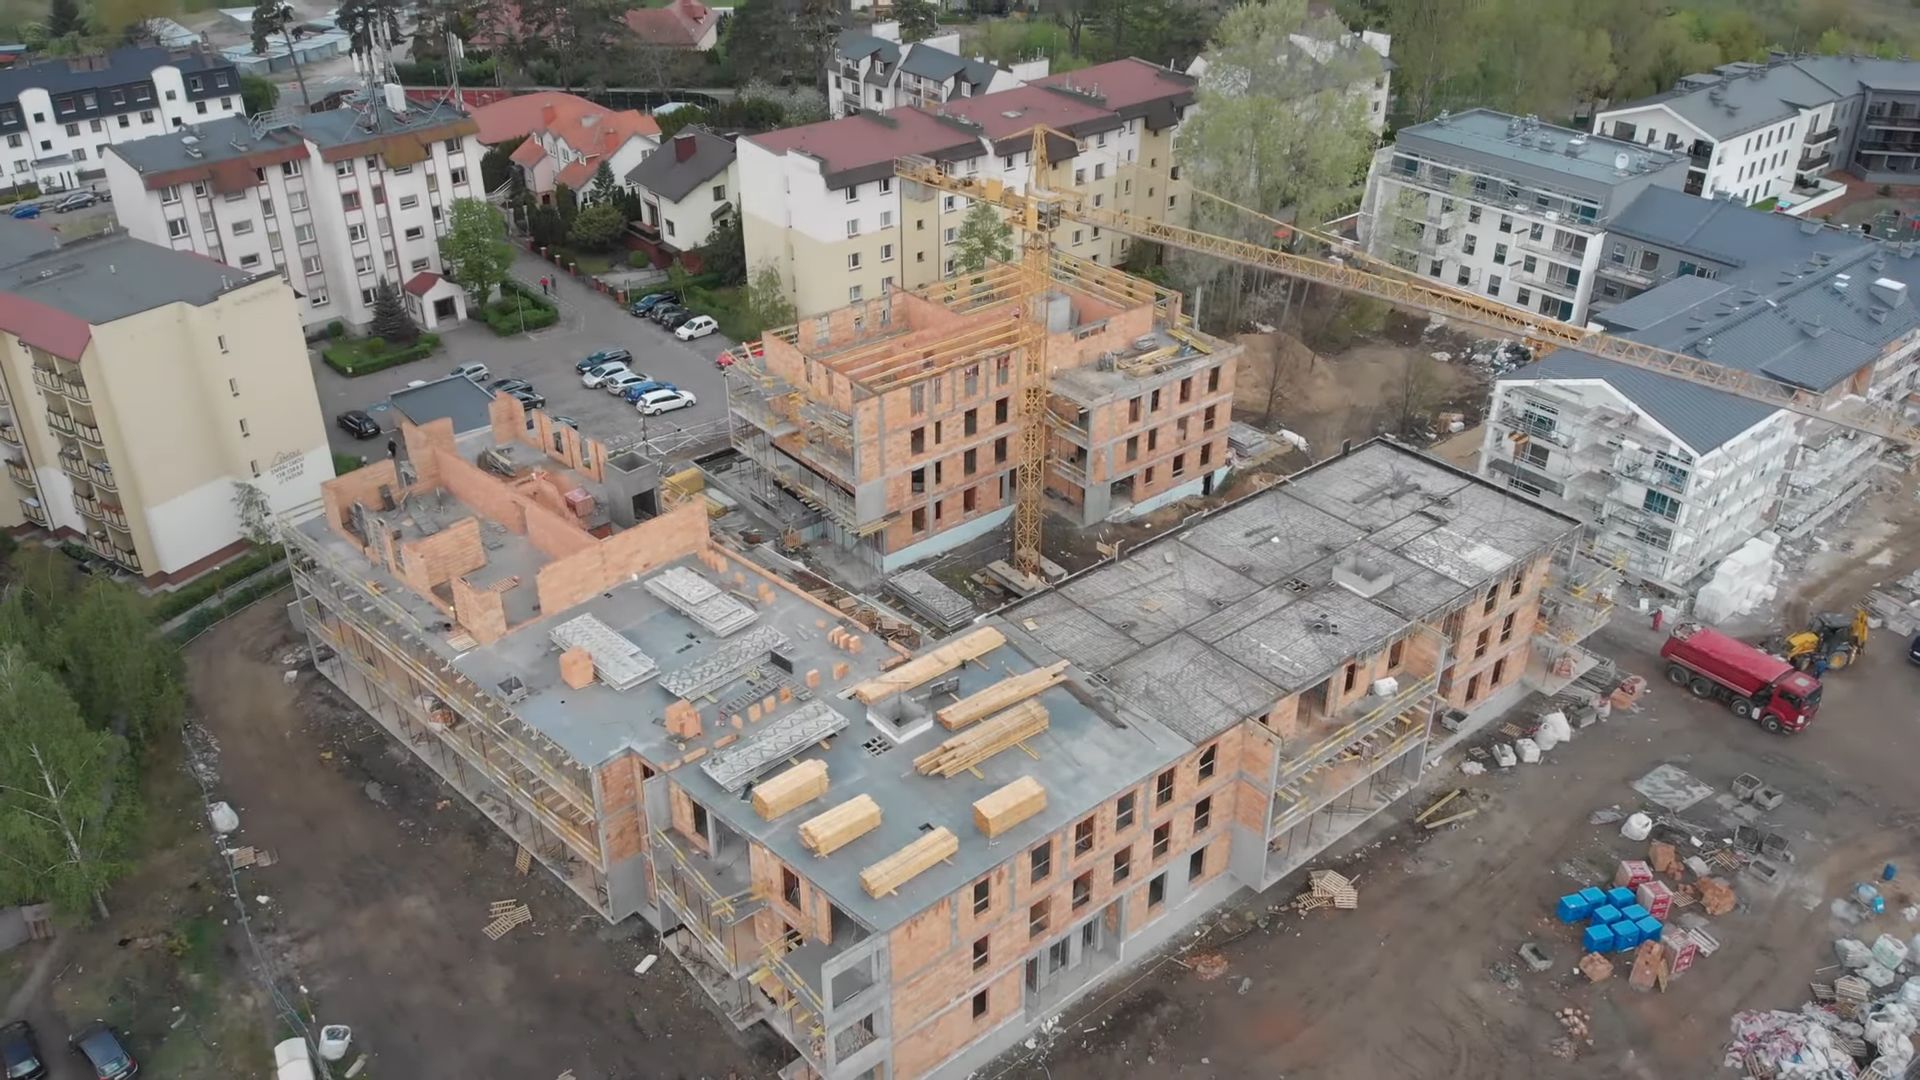 Dramat na budowie w Toruniu. Są wyniki kontroli po śmierci 46-latka